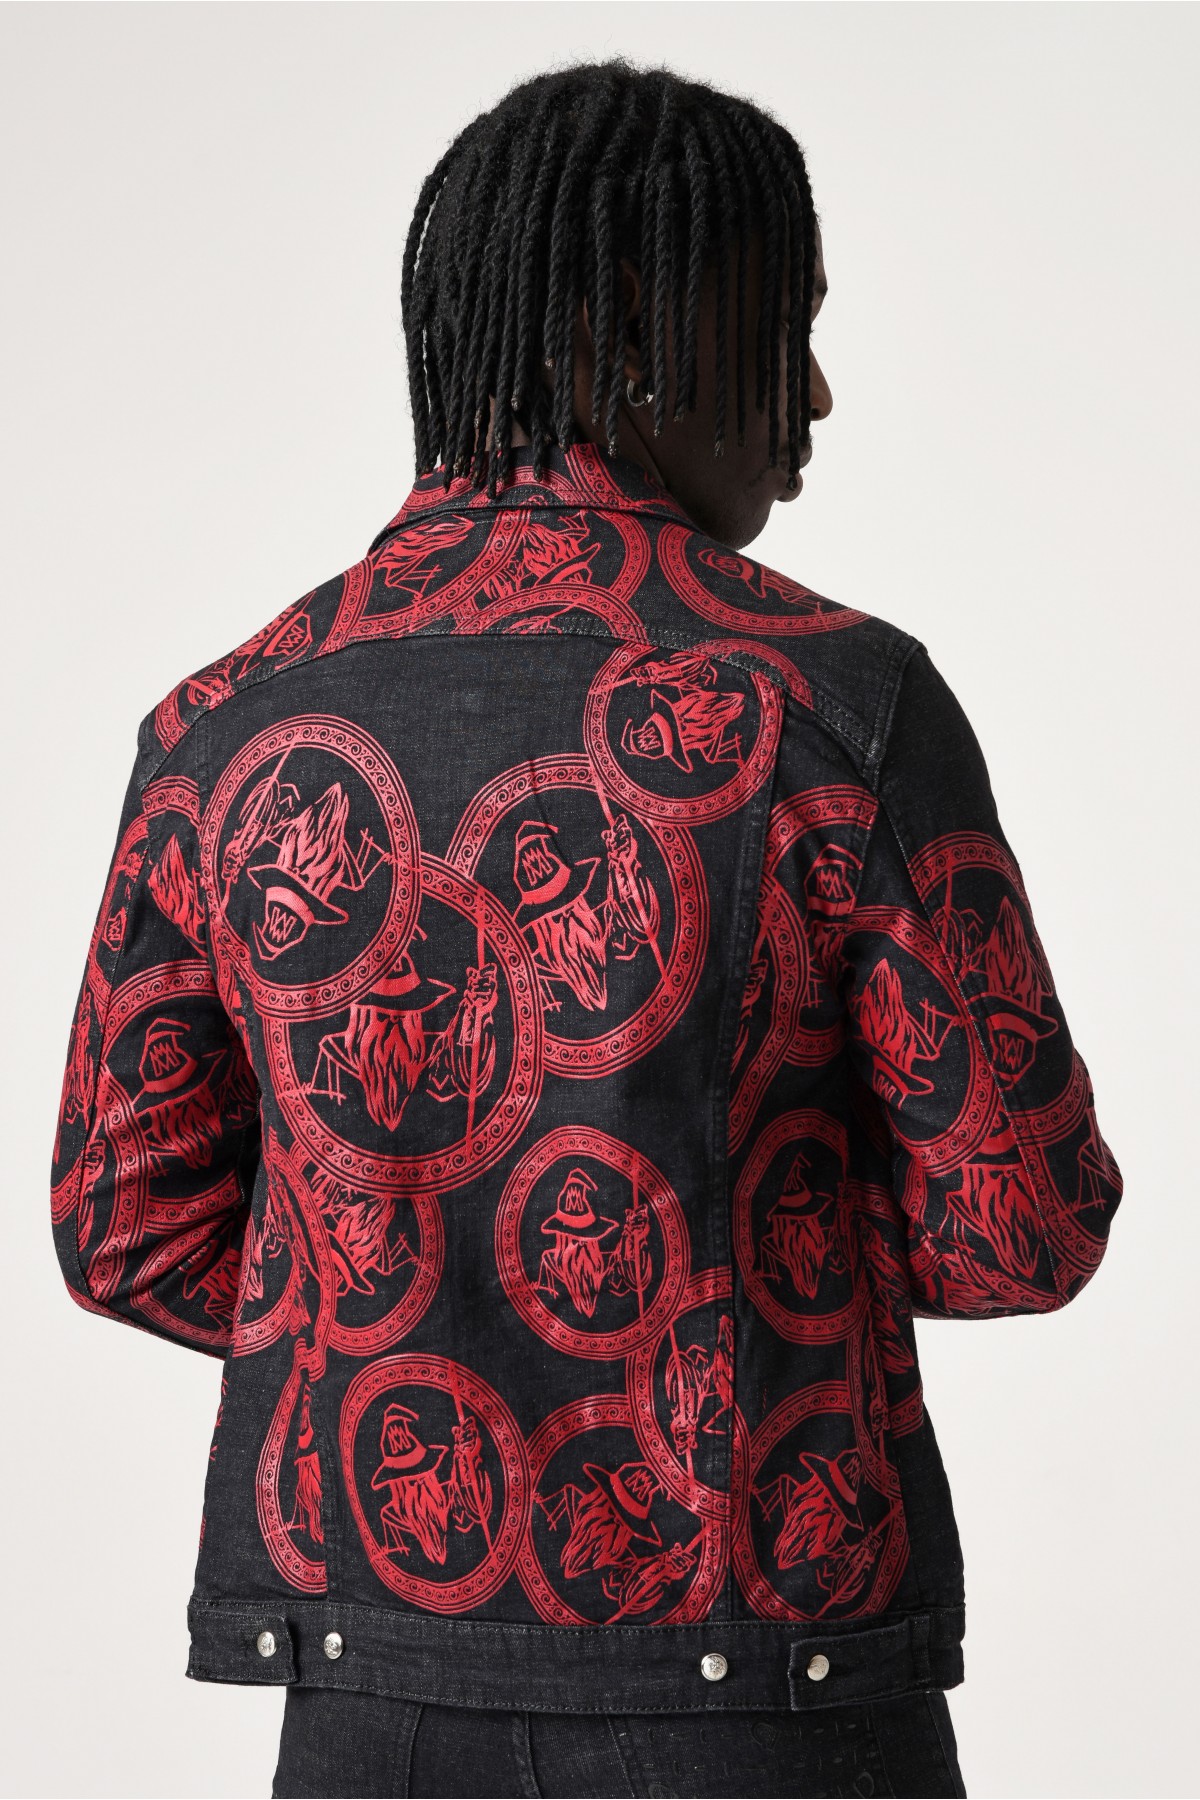 Erkek Denim Ceket - Morato logolu kırmızı desenli - Koyu Gri